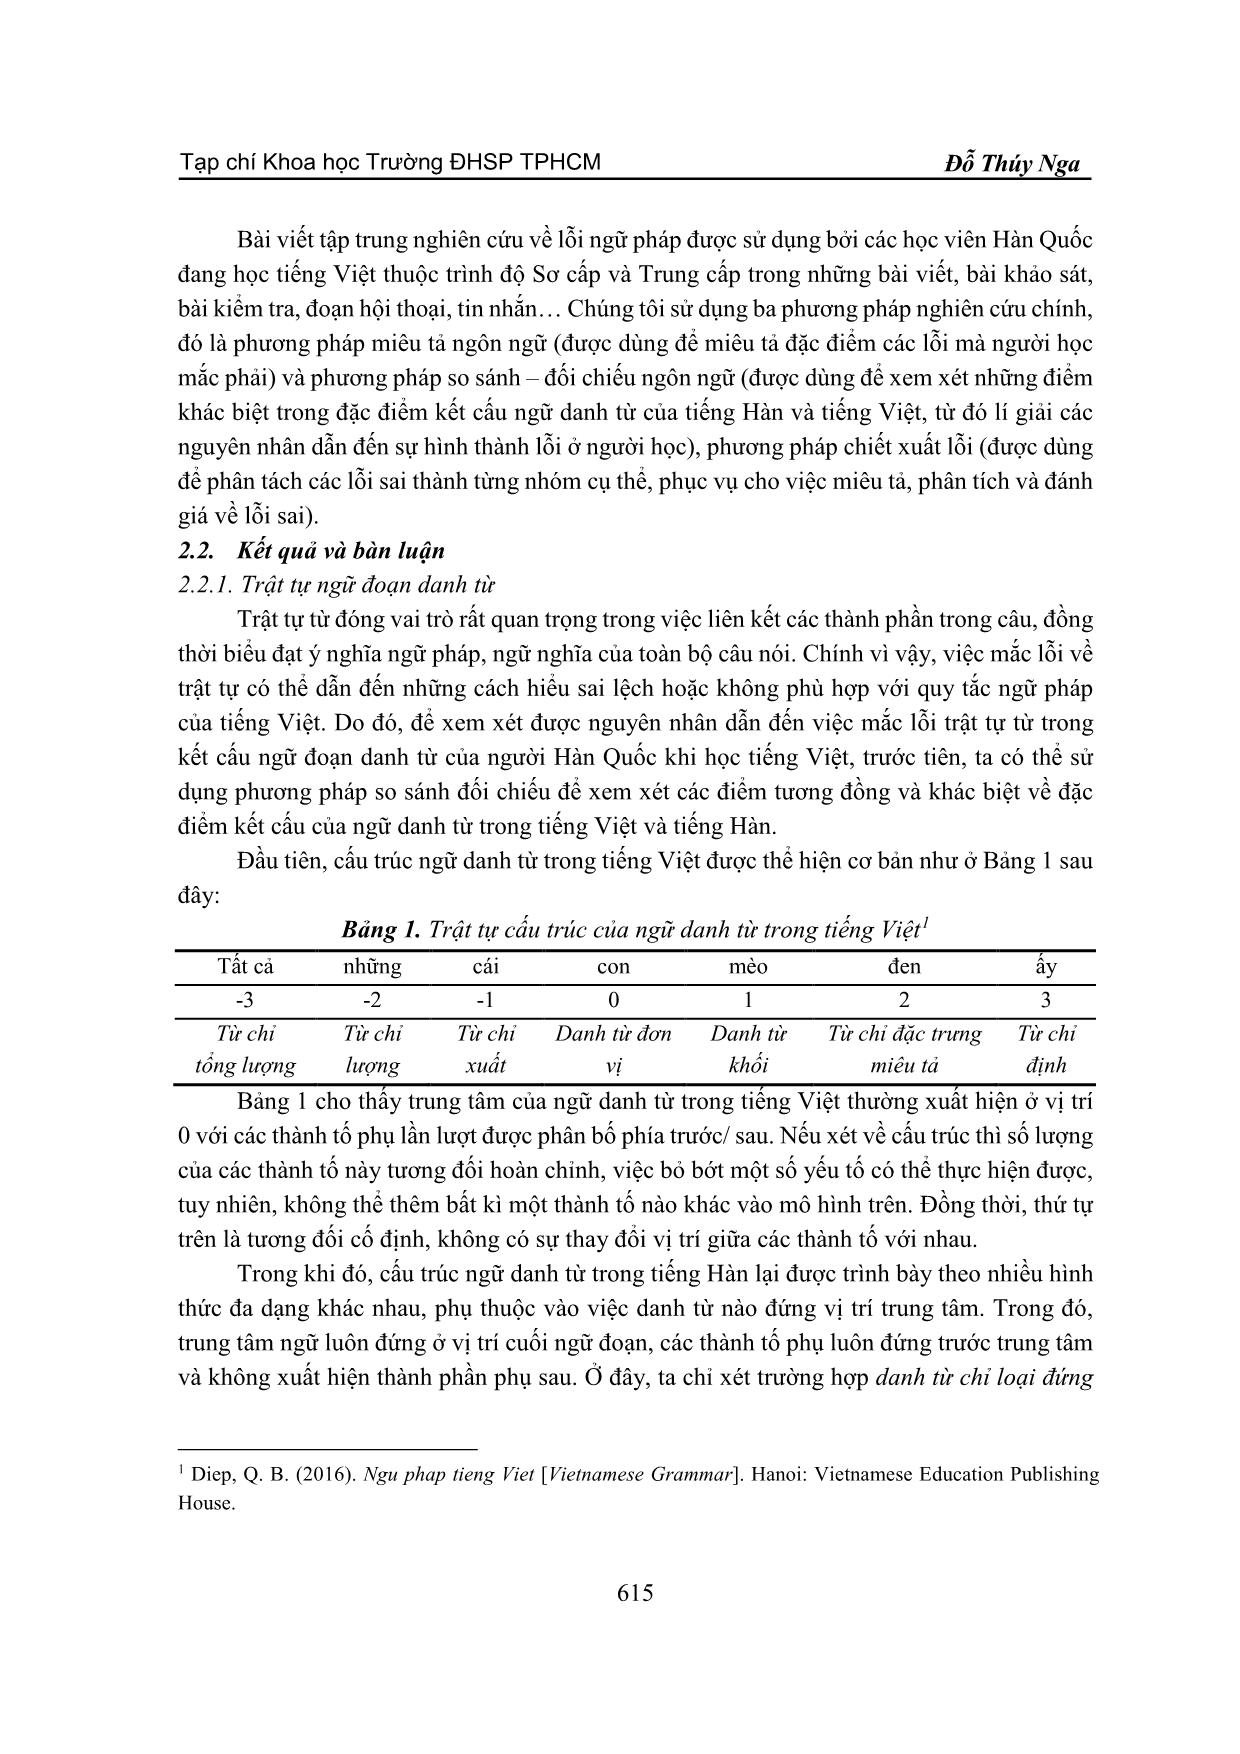 Lỗi sắp xếp trật tự trong ngữ đoạn danh từ của người Hàn quốc học Tiếng Việt trang 2